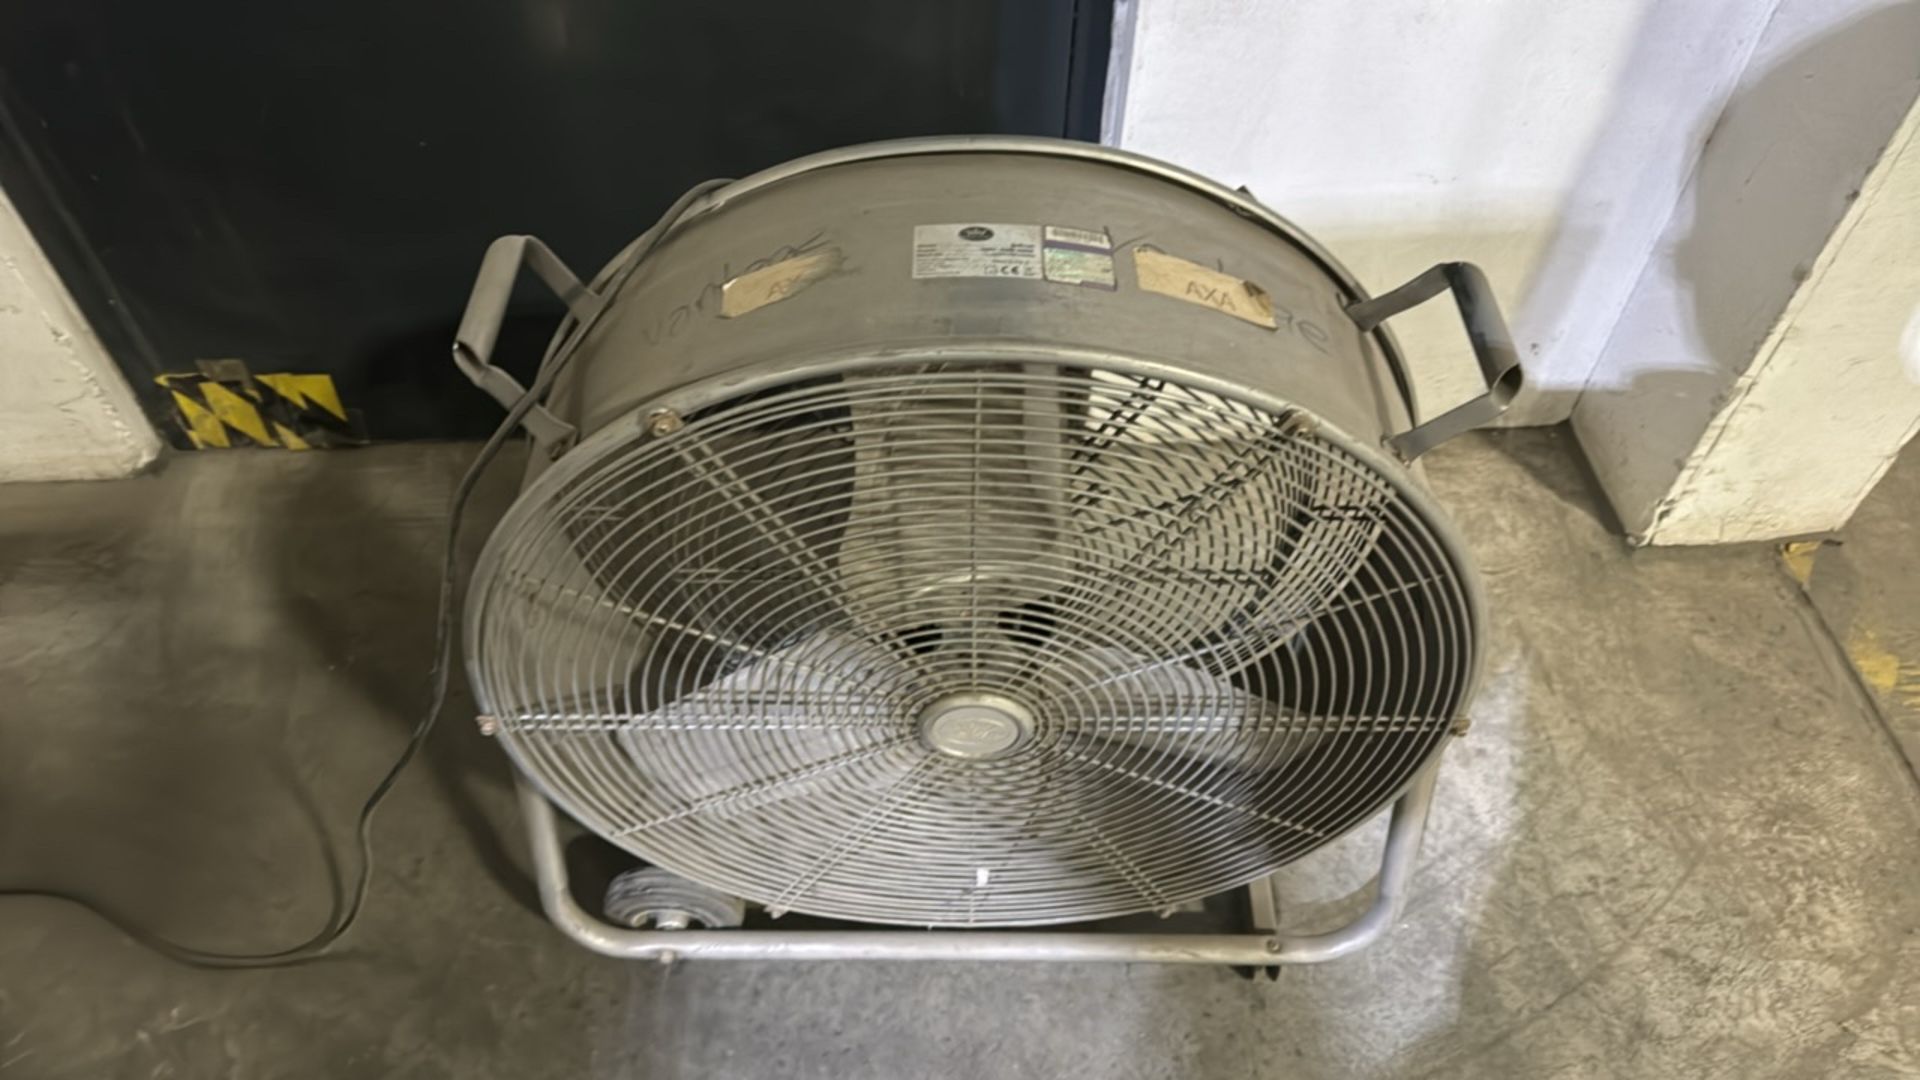 Prem-I-air Industrial Cooling Fan - Image 2 of 4